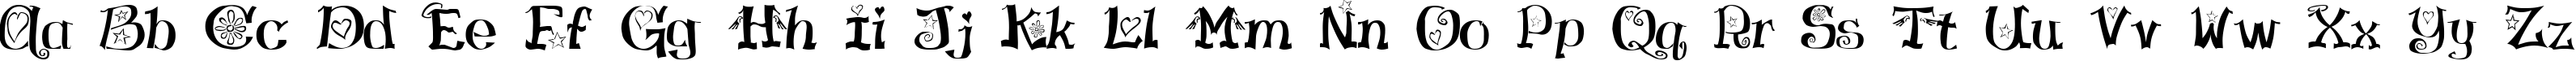 Пример написания английского алфавита шрифтом HamLake Regular